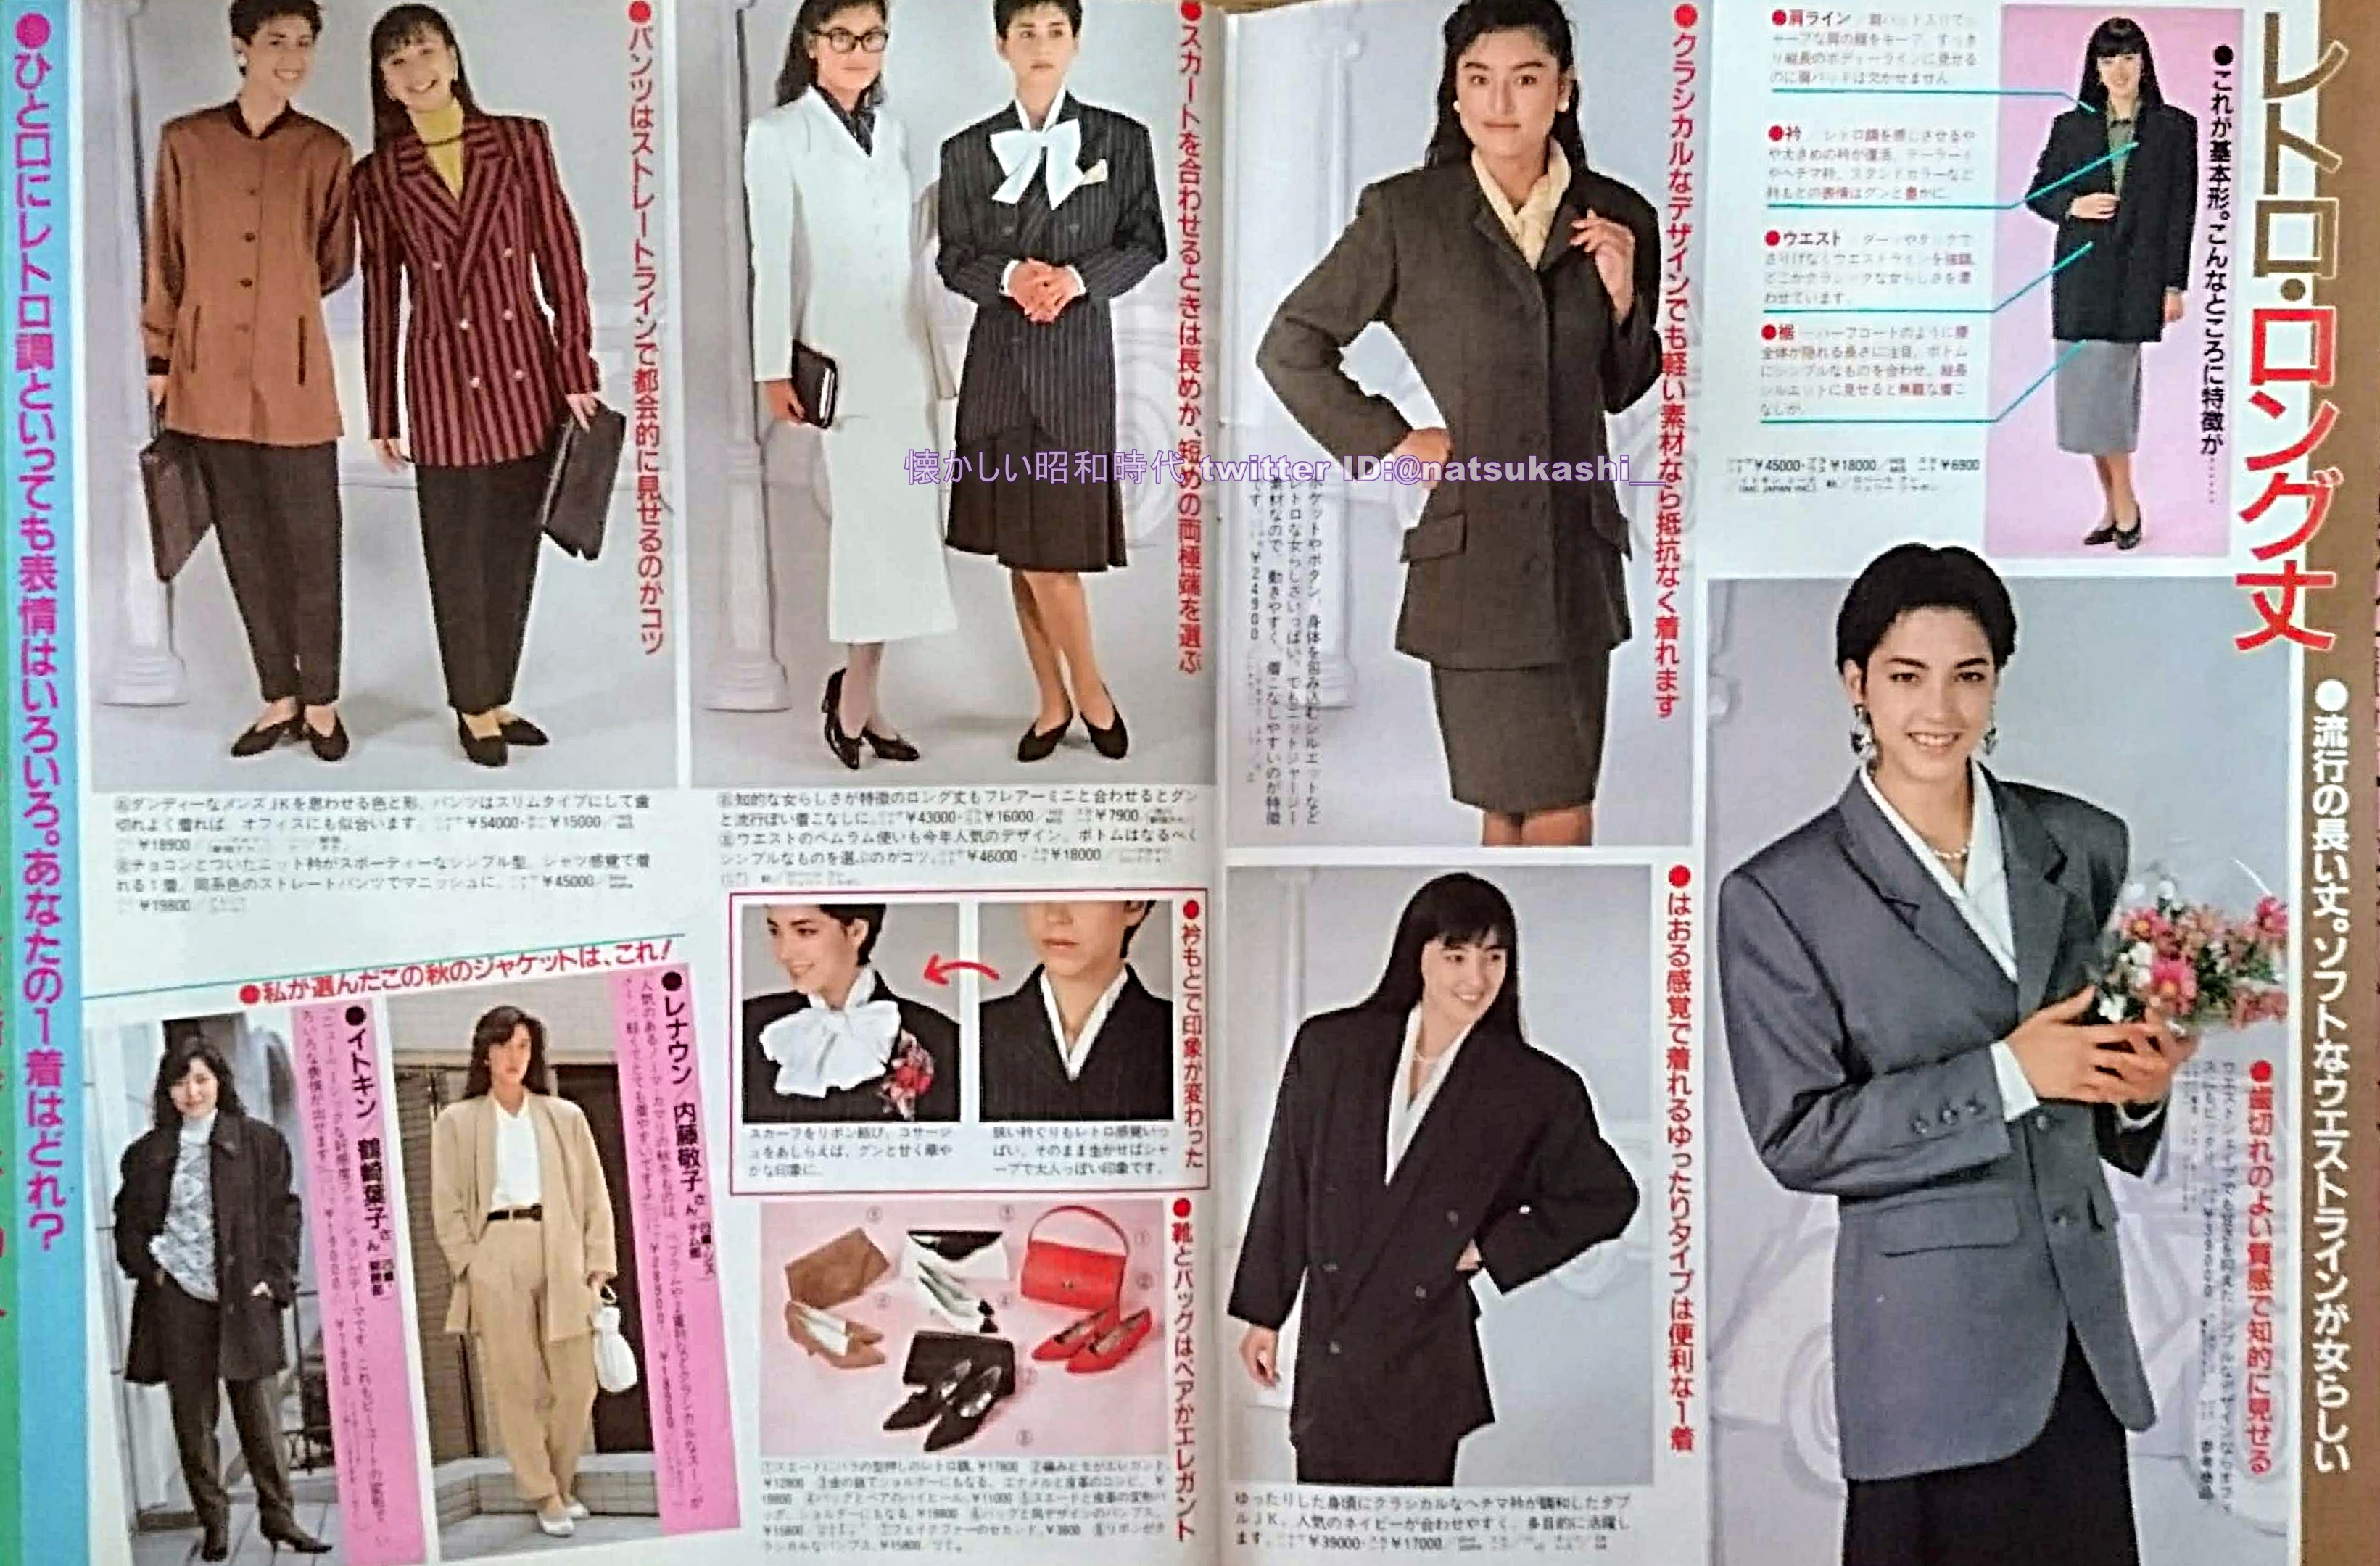 懐かしい昭和時代 週刊女性 1987年 昭和62年 9 29号 ジャケットで決める秋 バブル 初期 何度も言ってるけど この頃のボディコンもスカートも 膝より下の長い丈なのでダサいんです バブル期には ミニのボディコンは存在しないのよね 肩パットも